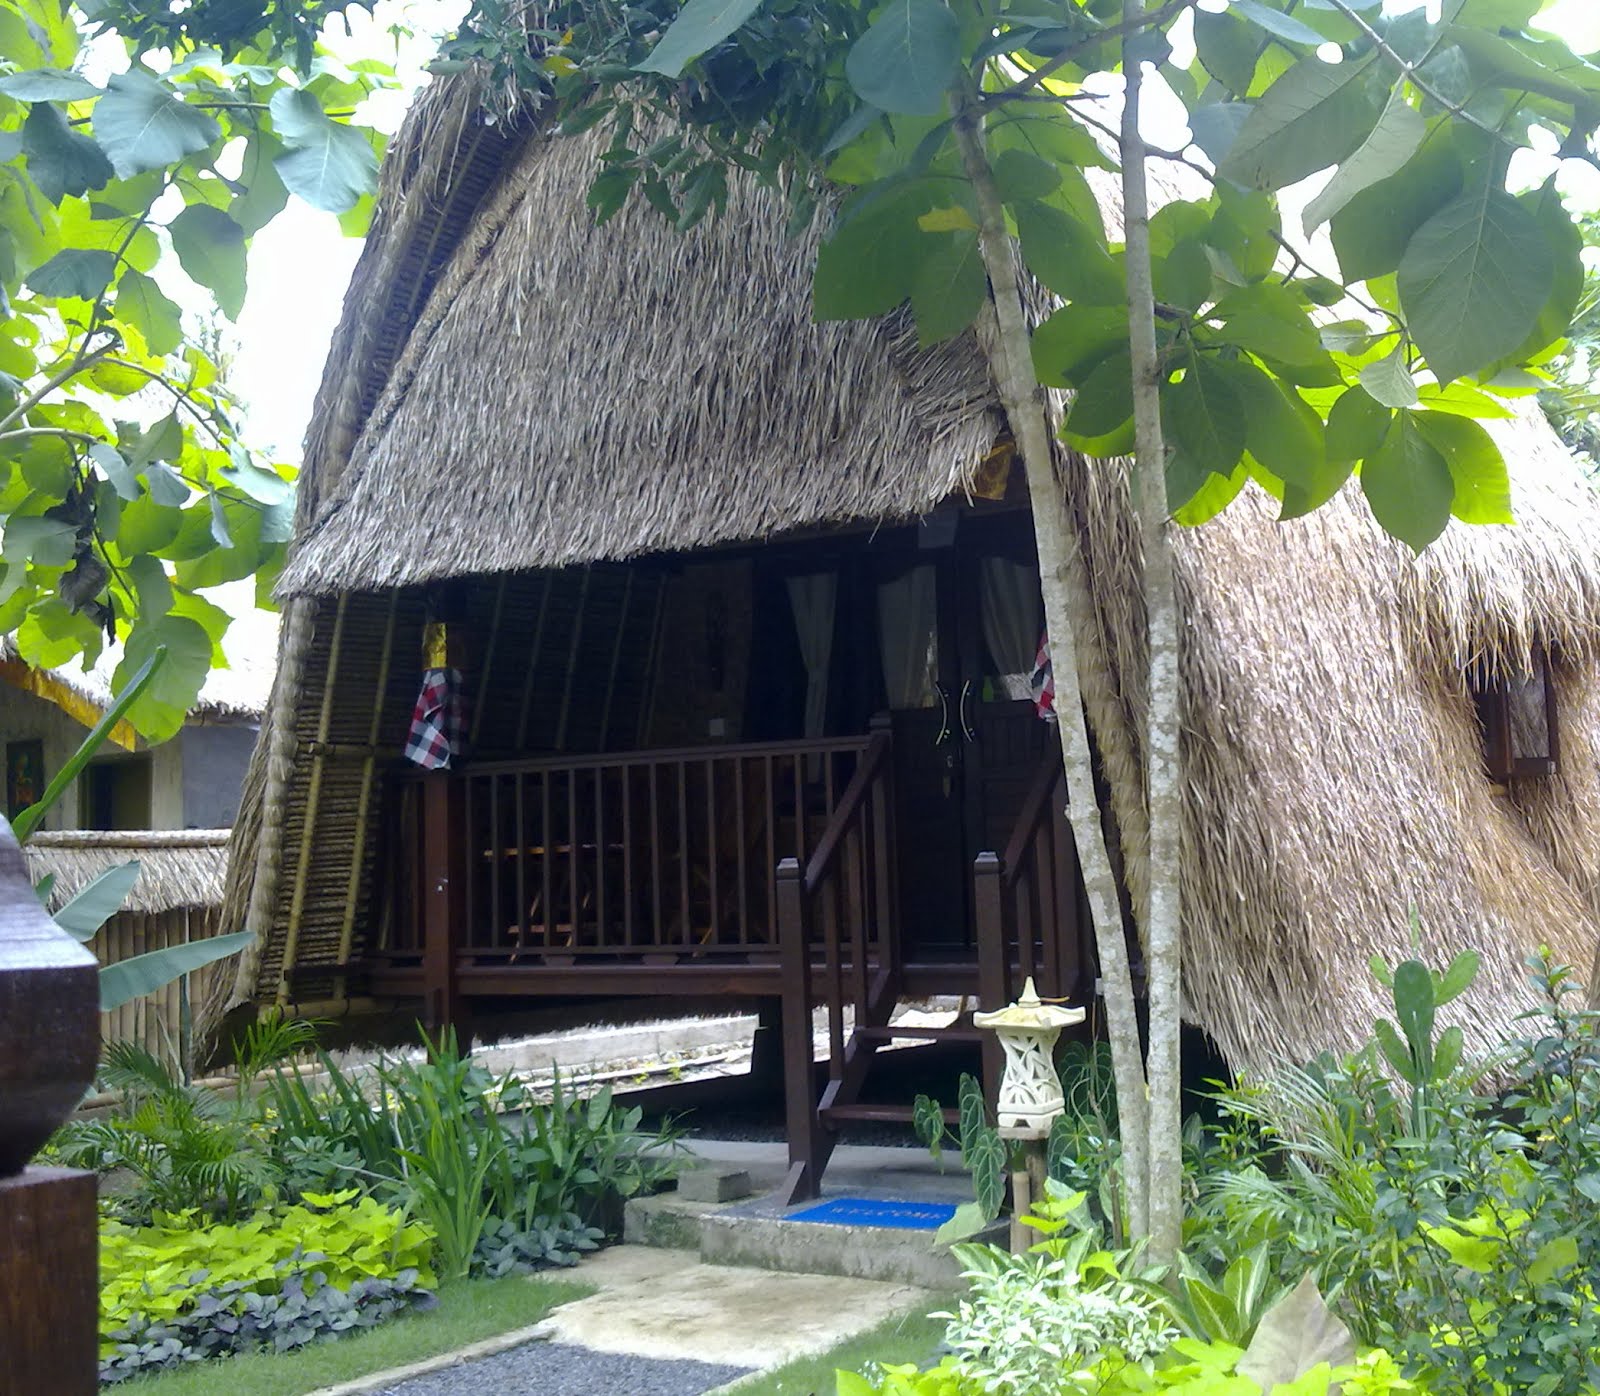 Song lambung beach huts